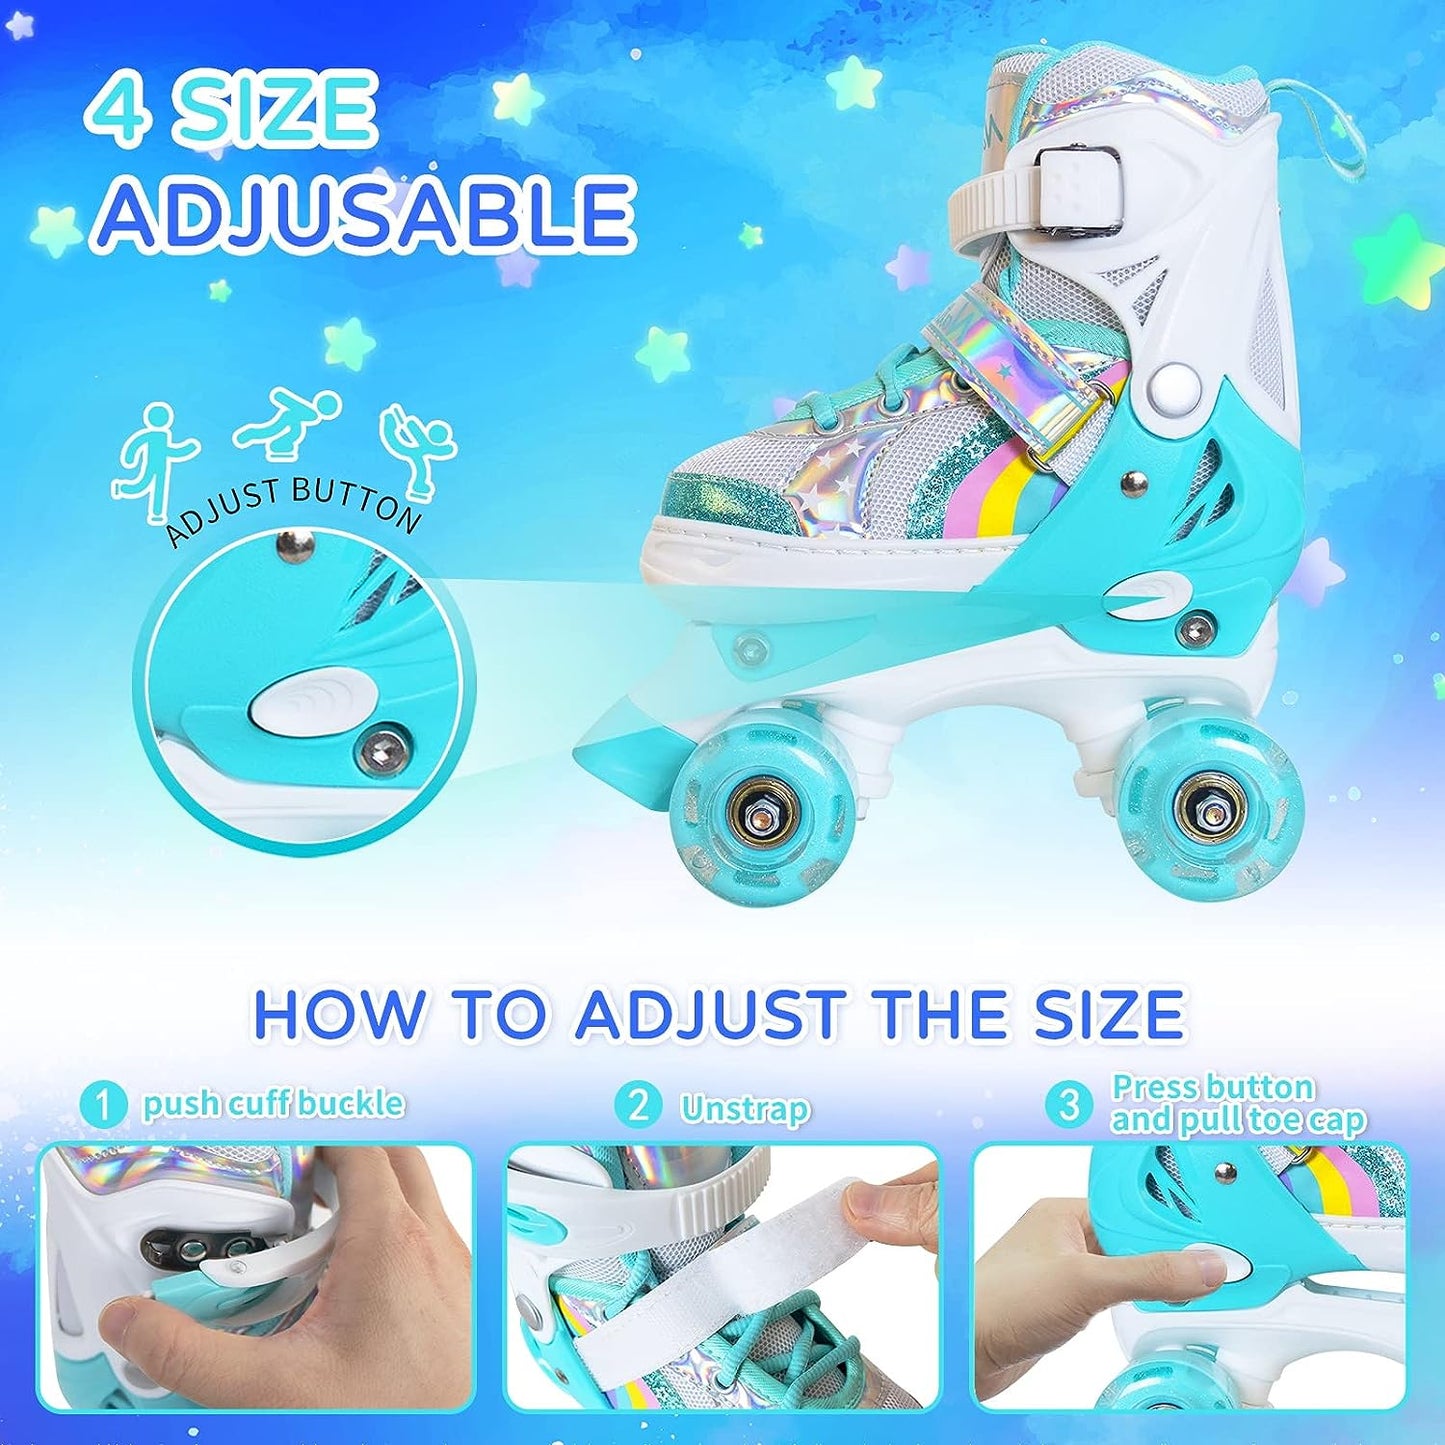 Nattork Adjustable Roller Skates for Kids - Teal